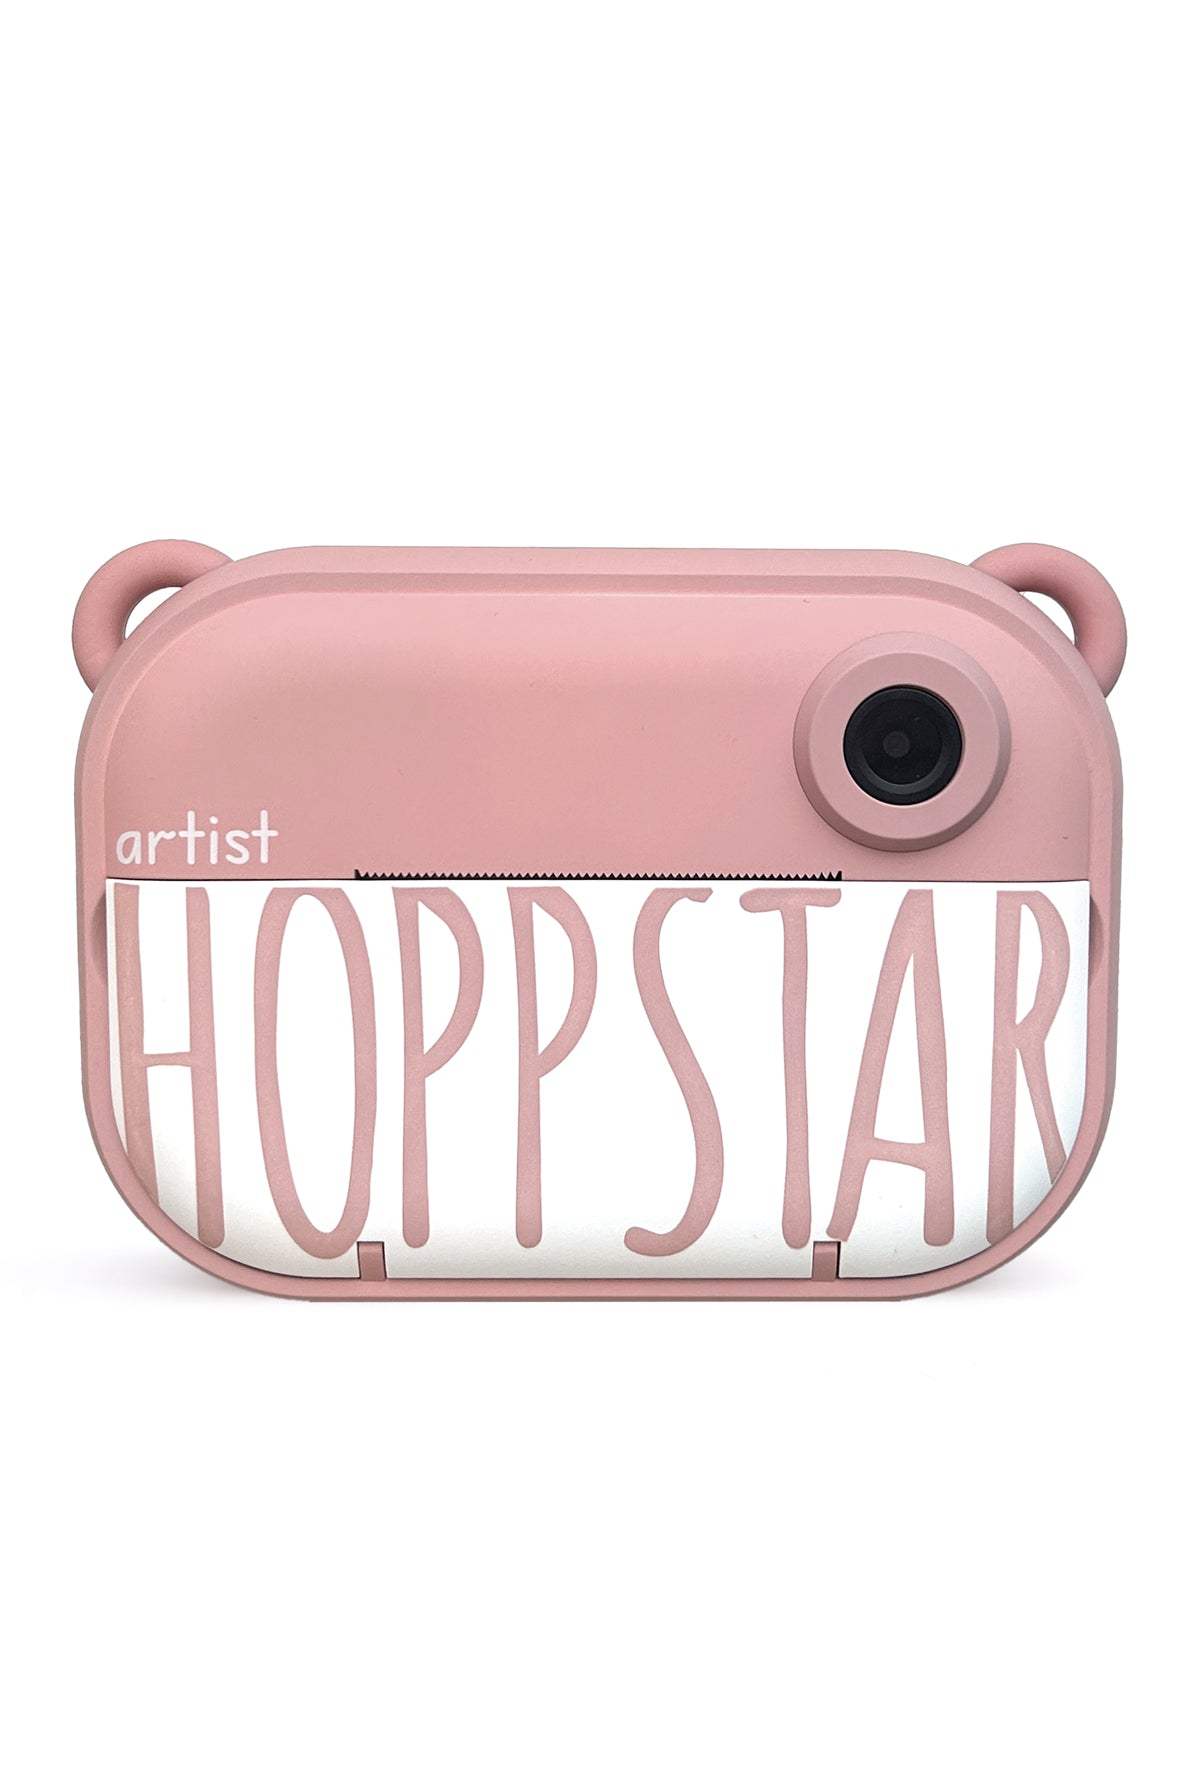 Hoppstar Artist Blush Digital Camera